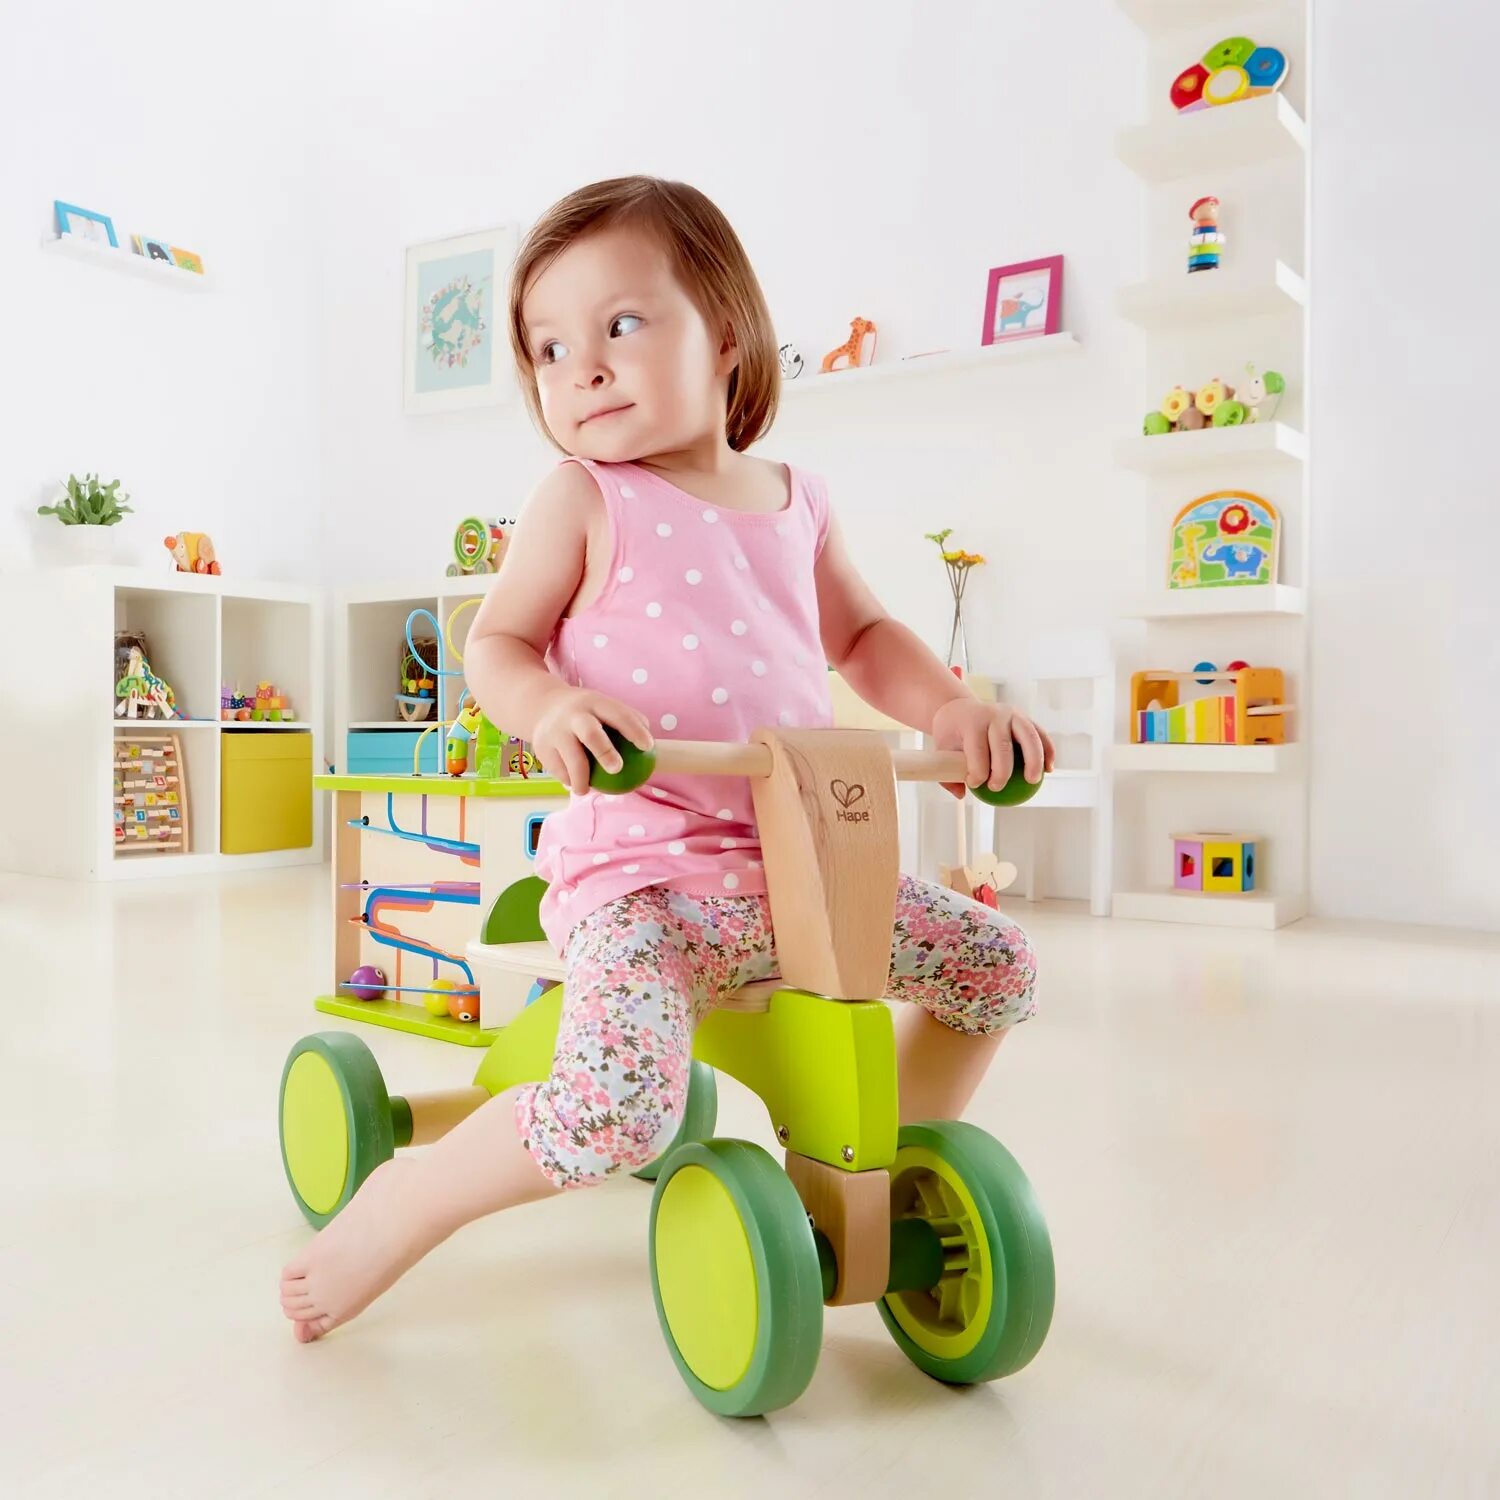 Hape беговел. Беговел Hape четырехколесный. Hape 4-х колесный скутер каталка. Каталка для малышей Hape. Деревянные каталки для детей от 1 года.